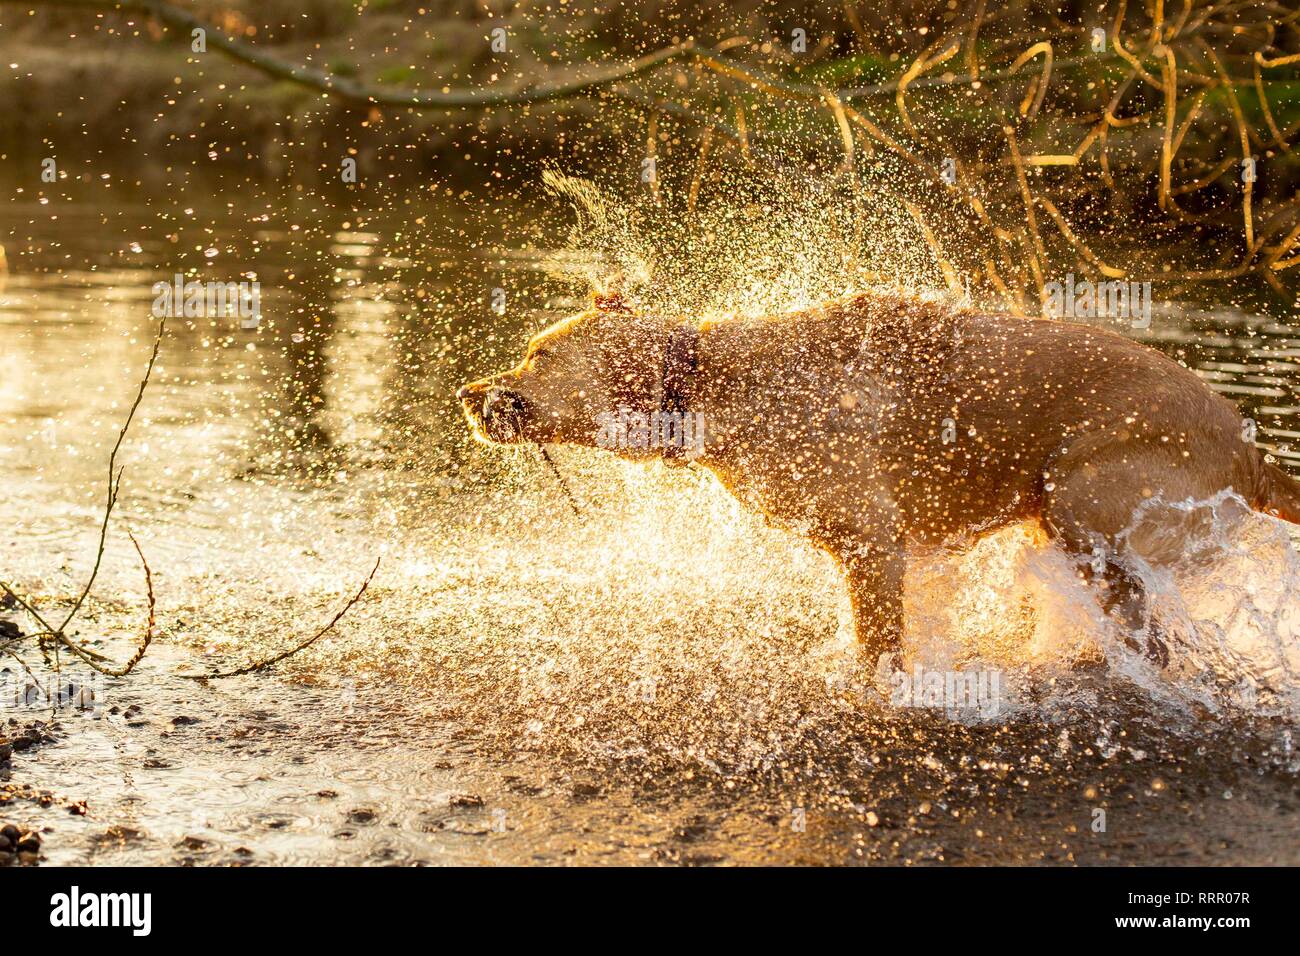 Cardiff, Wales, UK. 26. Februar 2019. Ein Hund schüttelt das Wasser nach dem Schwimmen, da das Vereinigte Königreich seine wärmsten Februar auf Aufzeichnung Erfahrungen. Credit: Mark Hawkins/Alamy leben Nachrichten Stockfoto